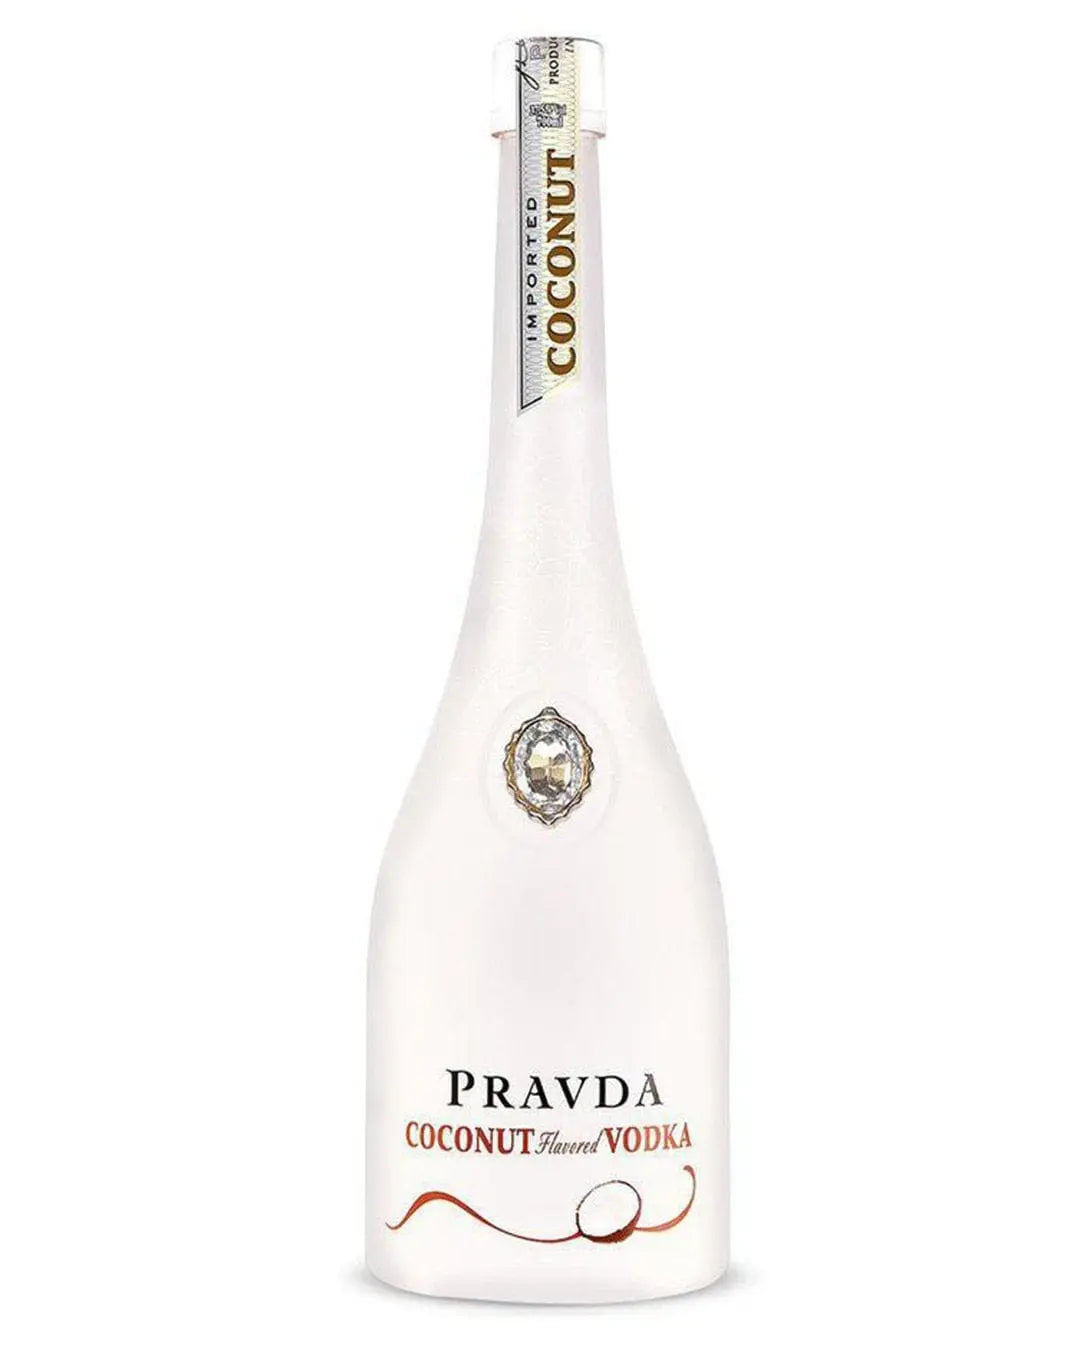 Pravda Ultra Premium Polish Coconut Vodka, 70 cl Vodka 59018 11521 034